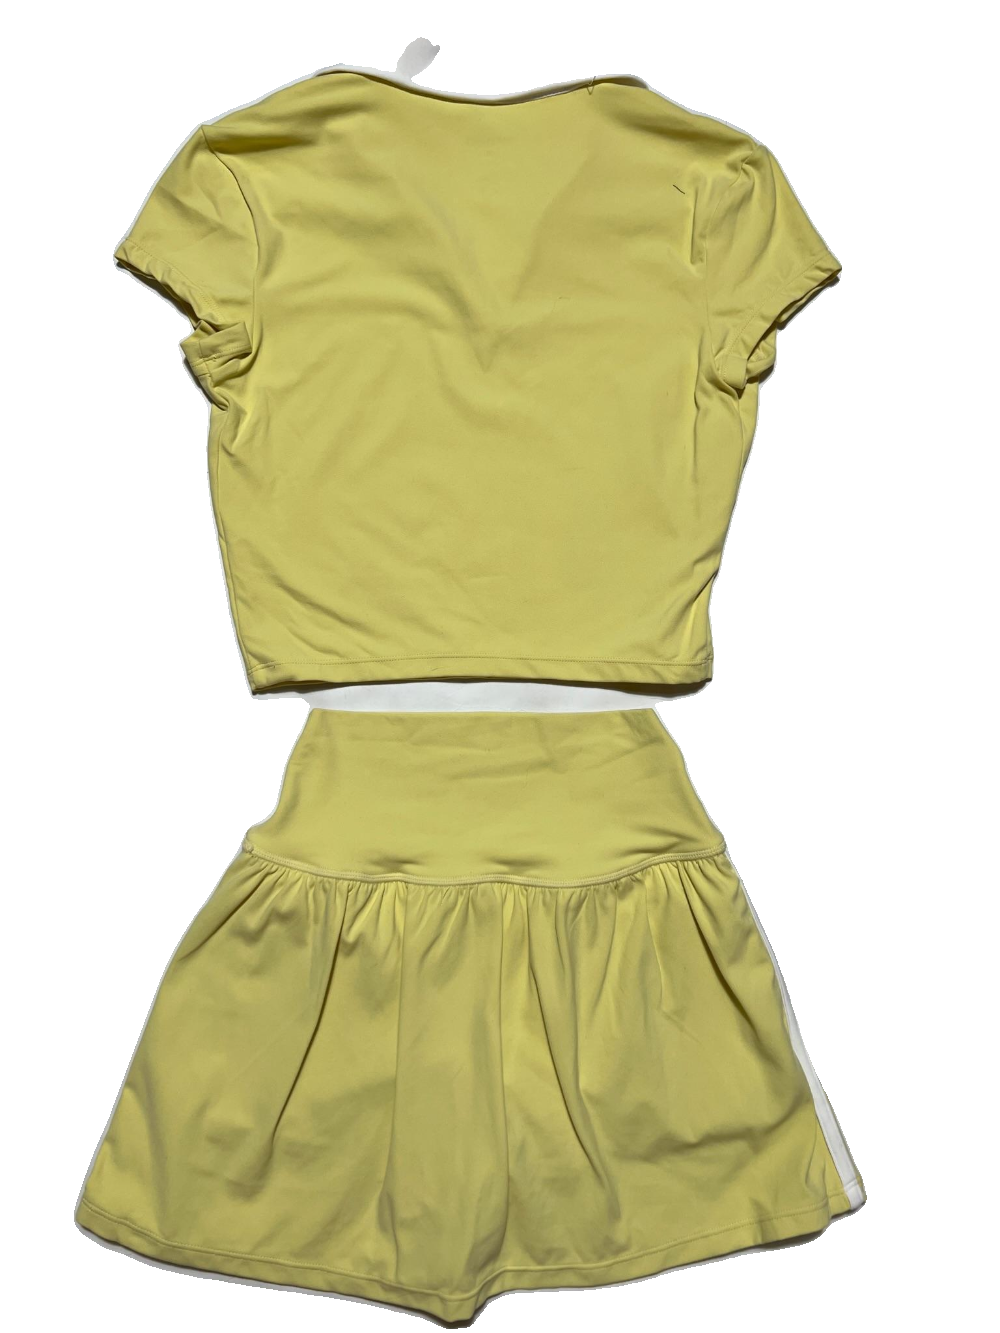 Splits 59- Yellow "Airweight" Tennis Skirt Set